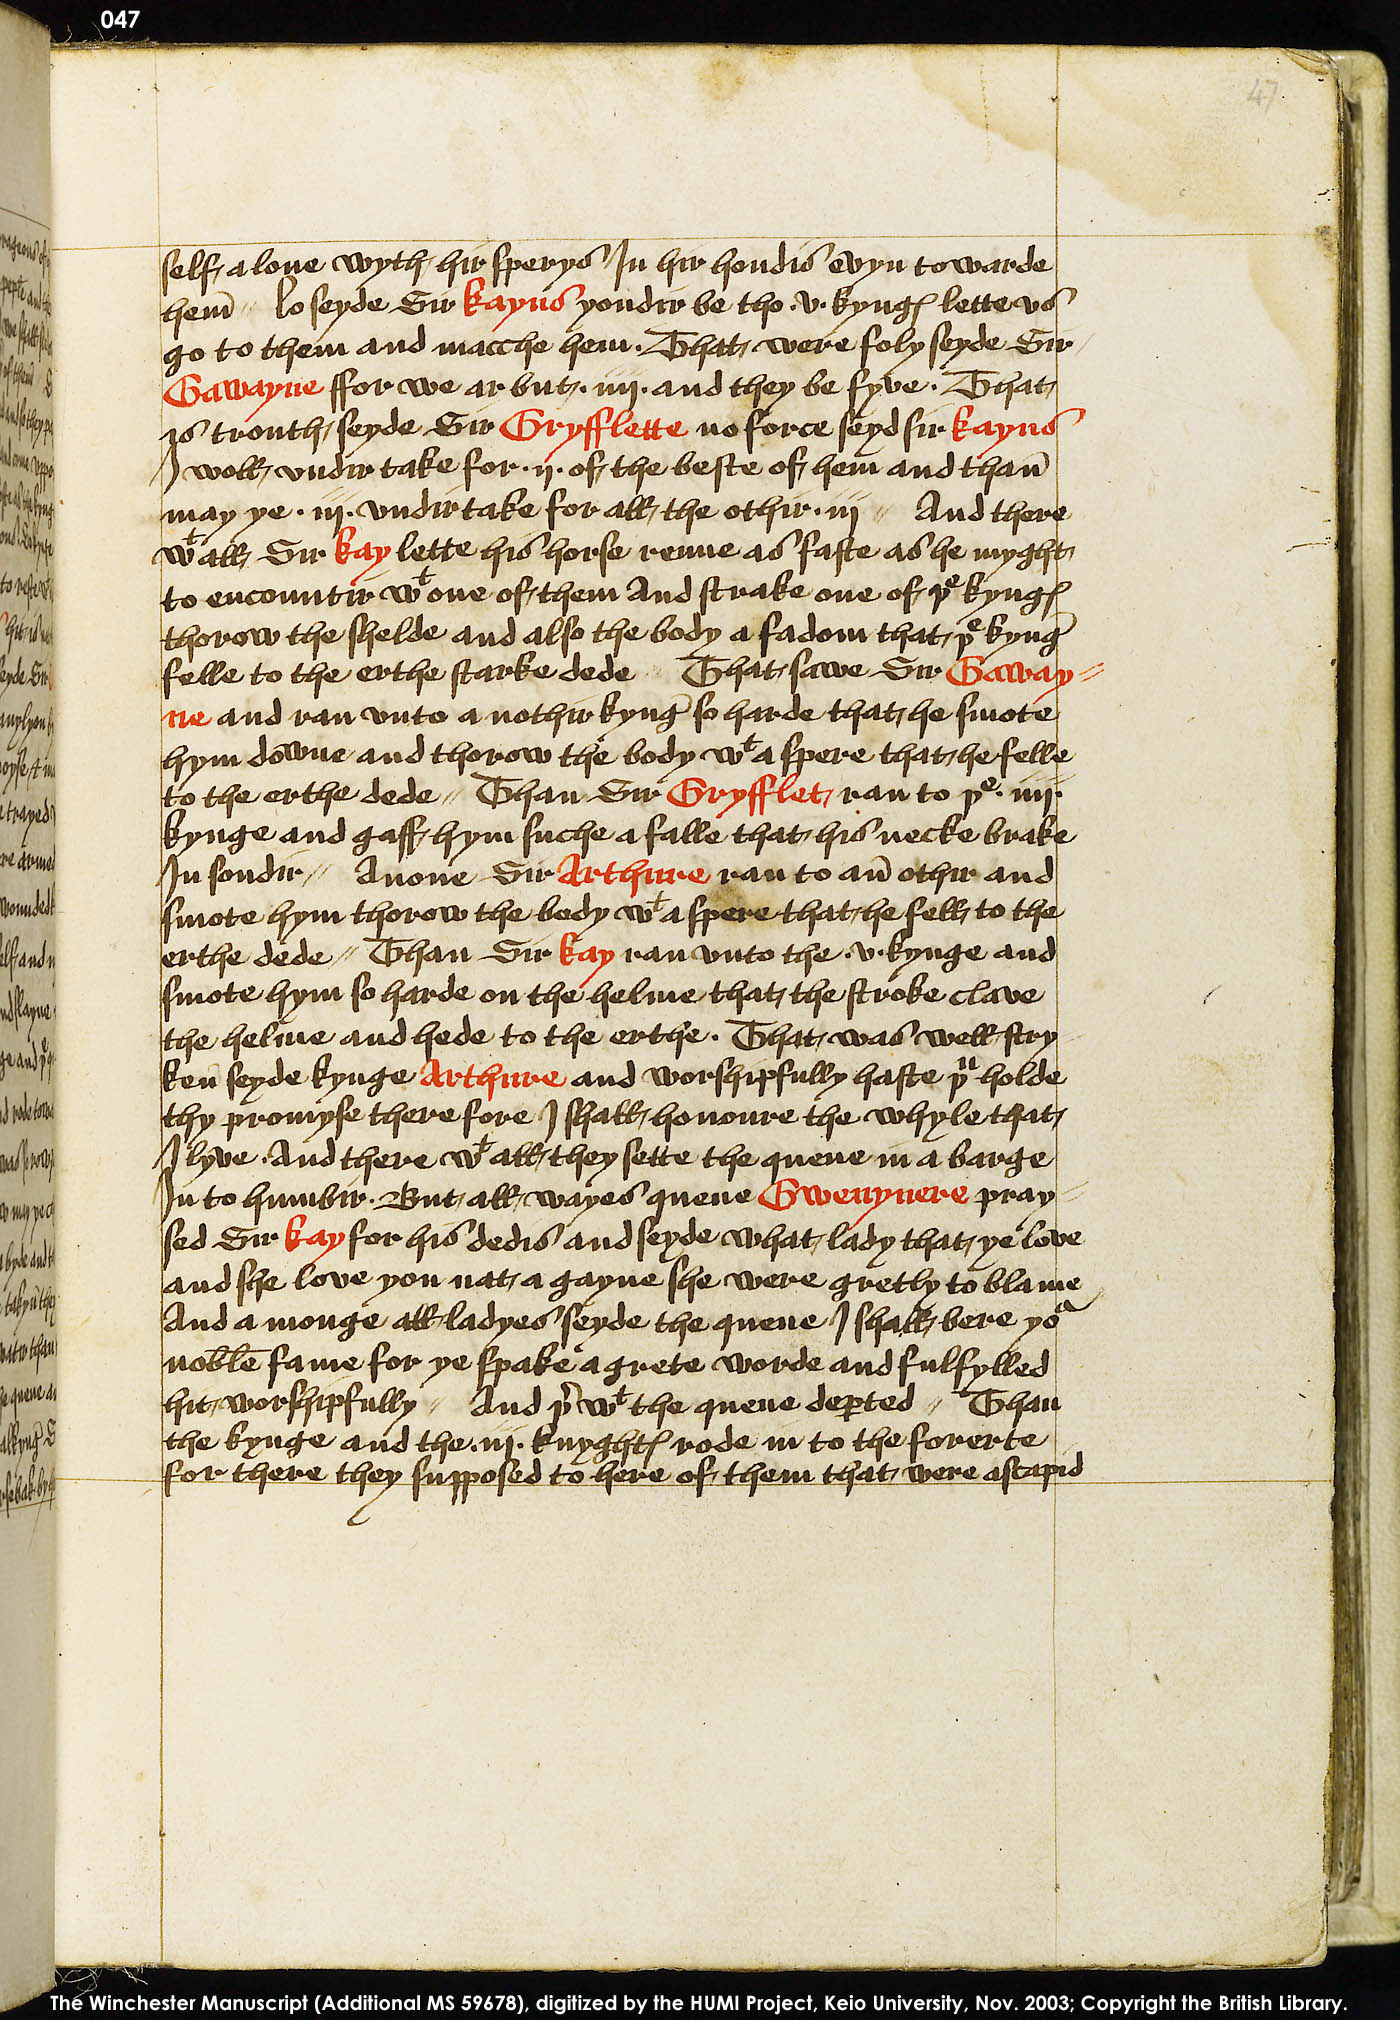 Folio 47r